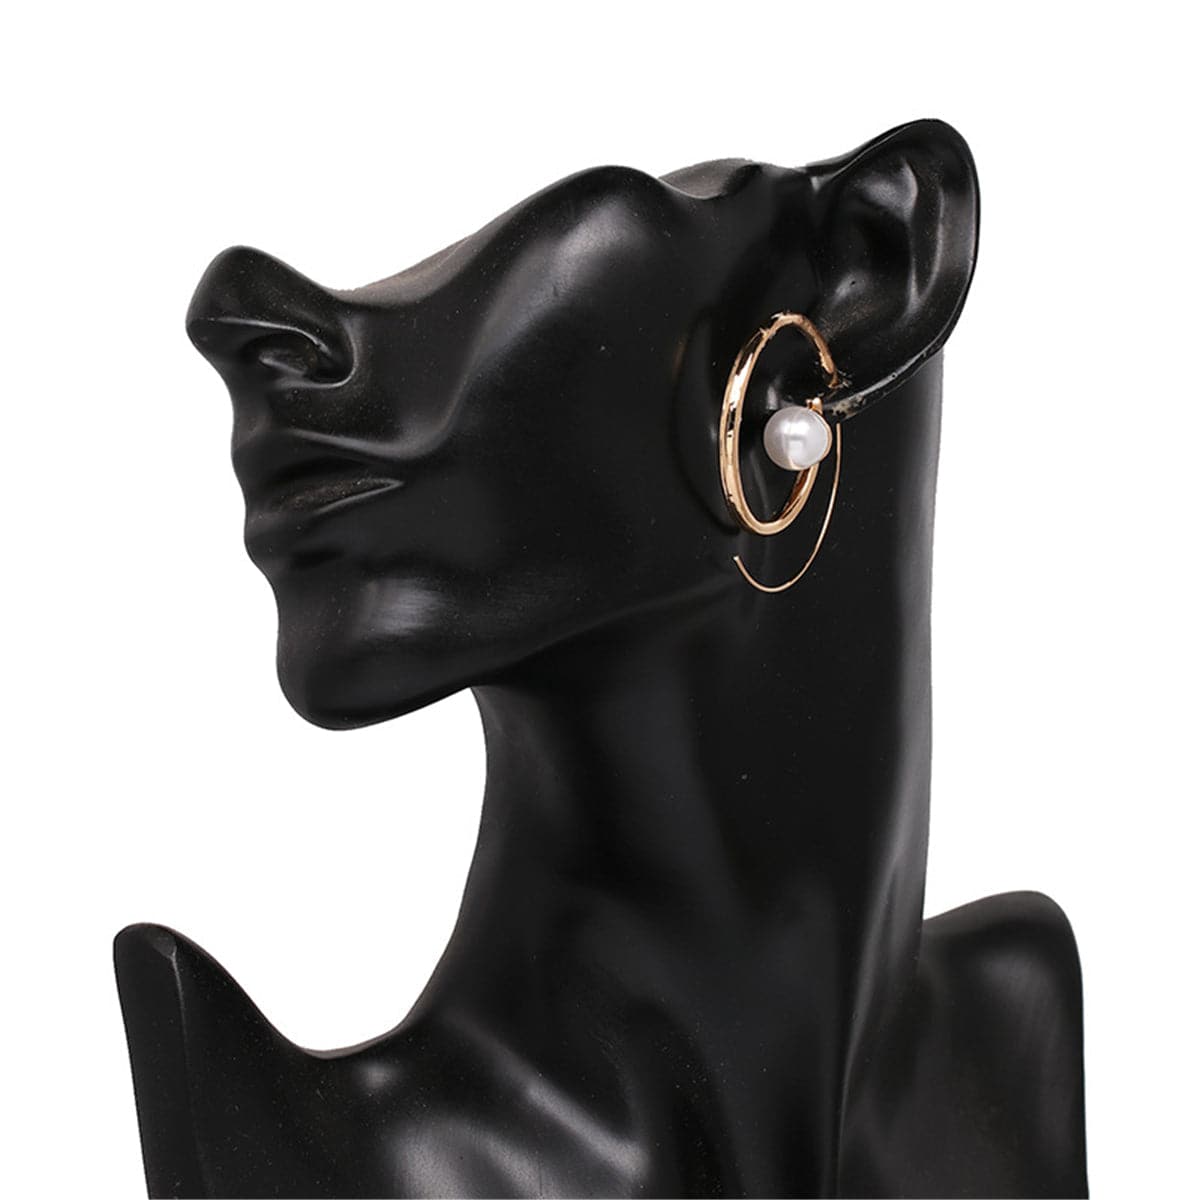 Cubic Zirconia & Pearl 18K Gold-Plated Spiral Hoop Earrings